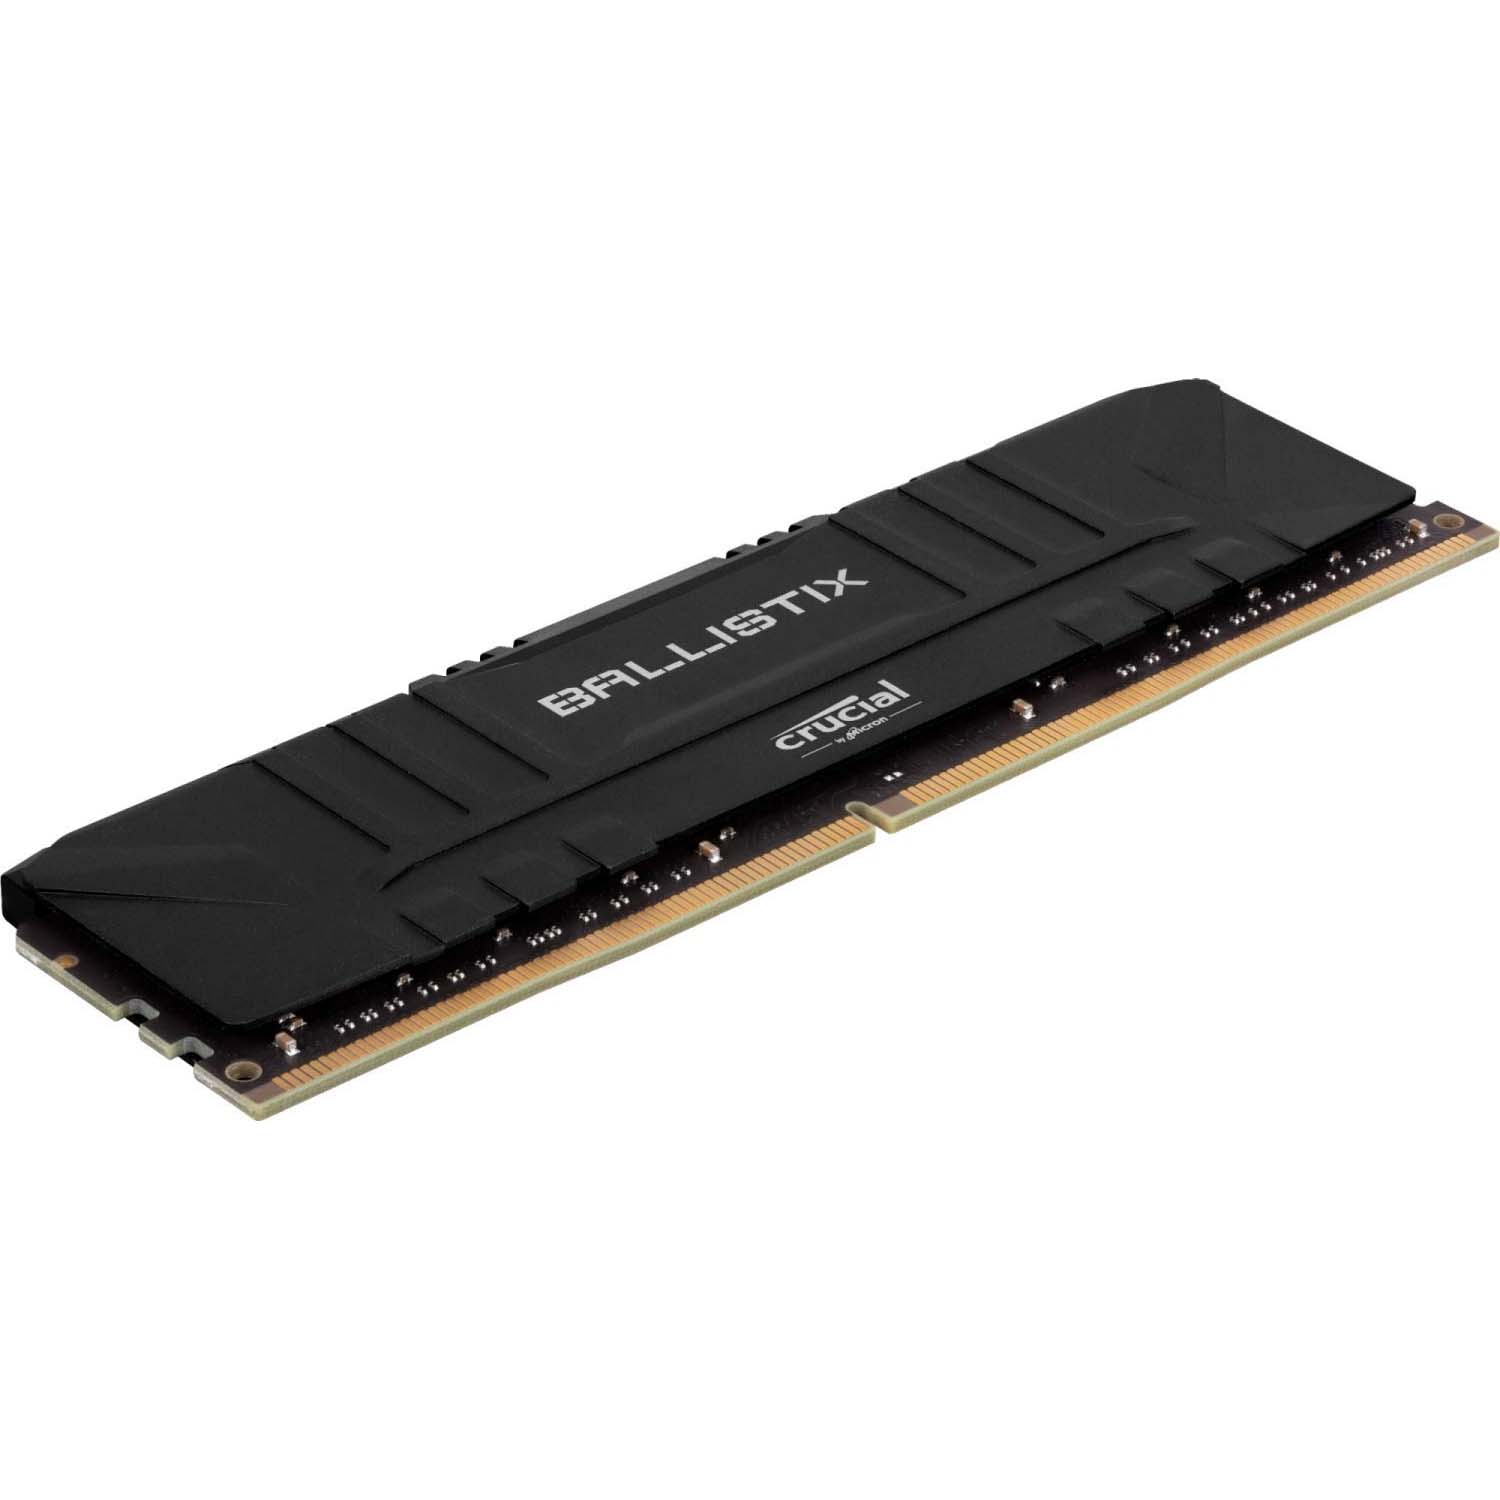 Crucial Ballistix RGB 8GB DDR4-3200 Desktop Gaming Memory Black (BL8G32C16U4BL)